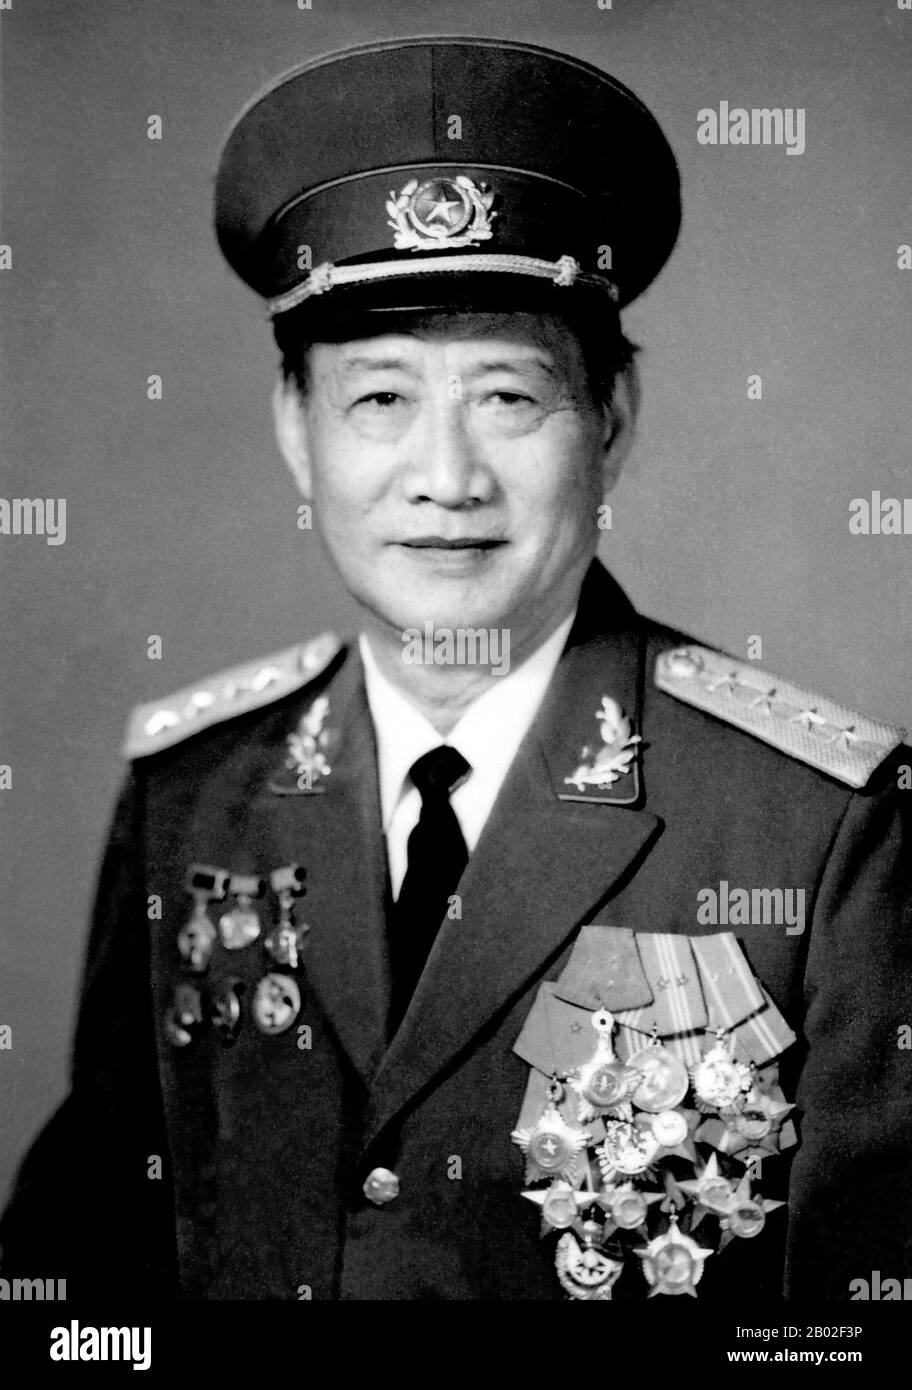 Hoàng Văn Thái (* 1. Mai 1915 in Hoàng Văn Xiêm; † 2. Juli 1986), geborene  , war eine vietnamesische kommunistische Militär- und politische Persönlichkeit. Seine Heimatstadt war Tây An, Bezirk Tiền Hải, Provinz Thái Bình. Er war Stabschef in der Schlacht bei Điện Biên Phủ. Anschließend war er während der Tết-Offensive der ranghöchste nordvietnamesische Offizier in Südvietnamesen. Stockfoto